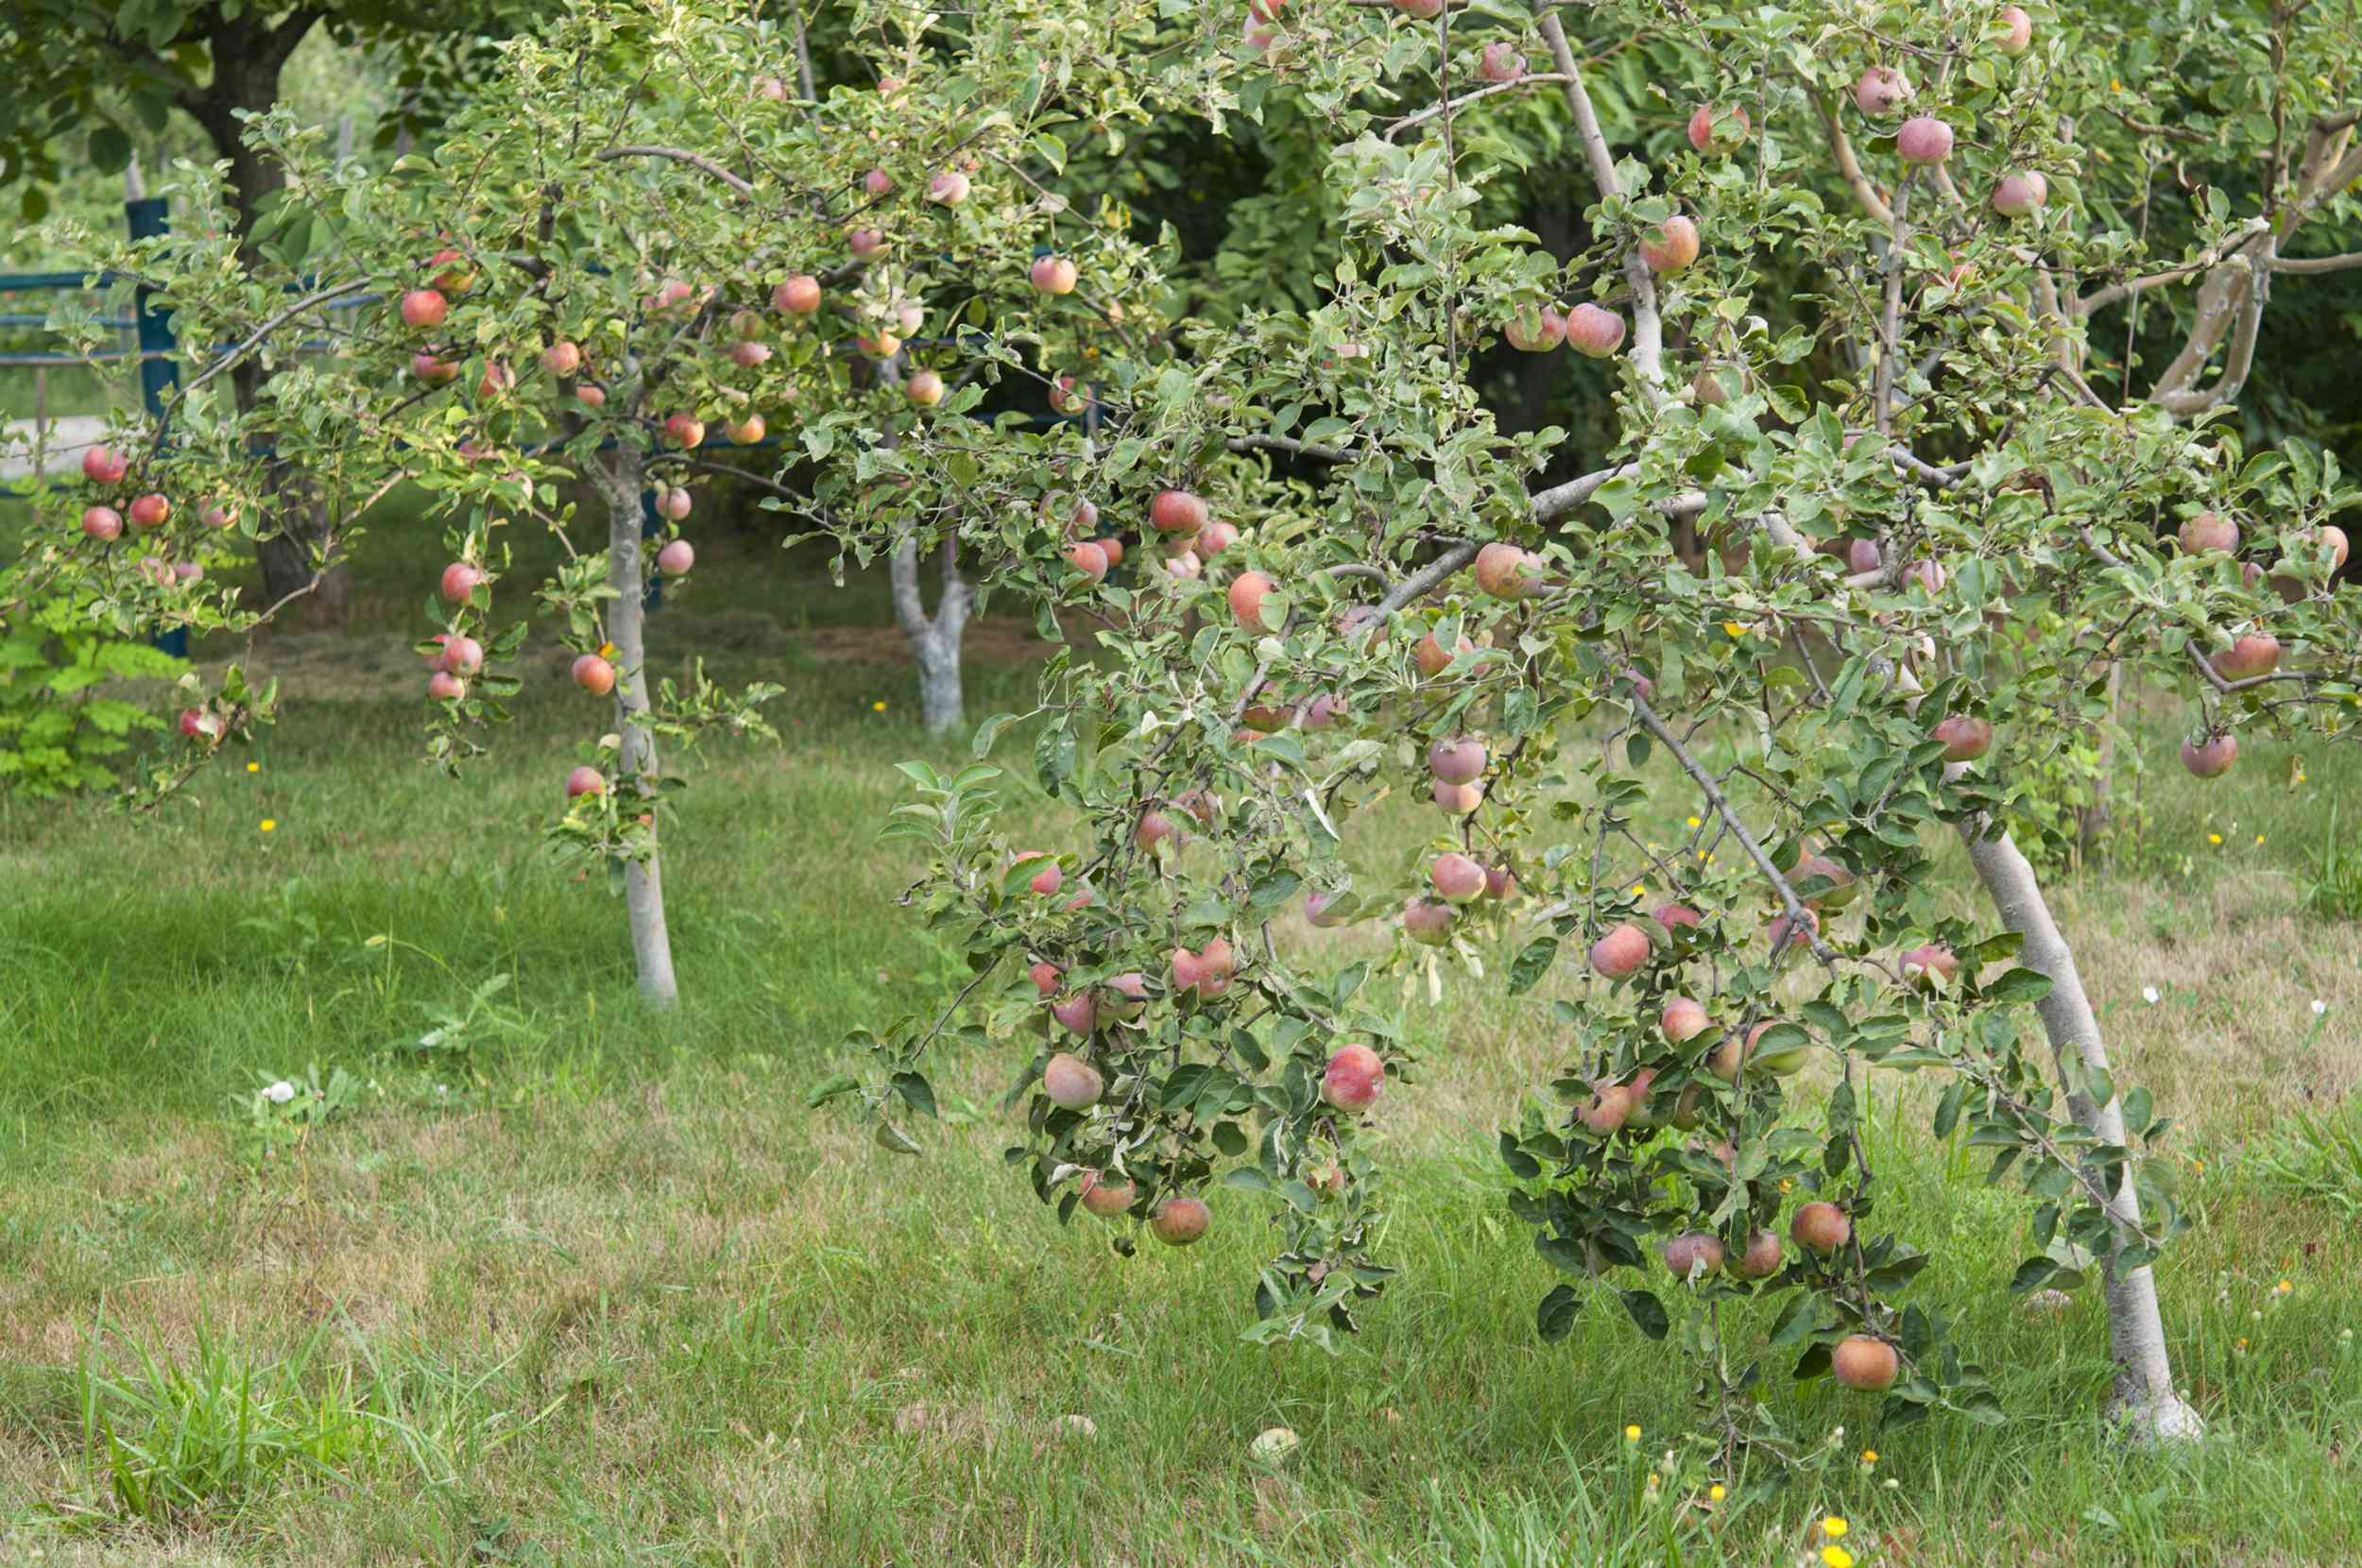 Manzanos enanos jóvenes en un jardín, cargados de fruta